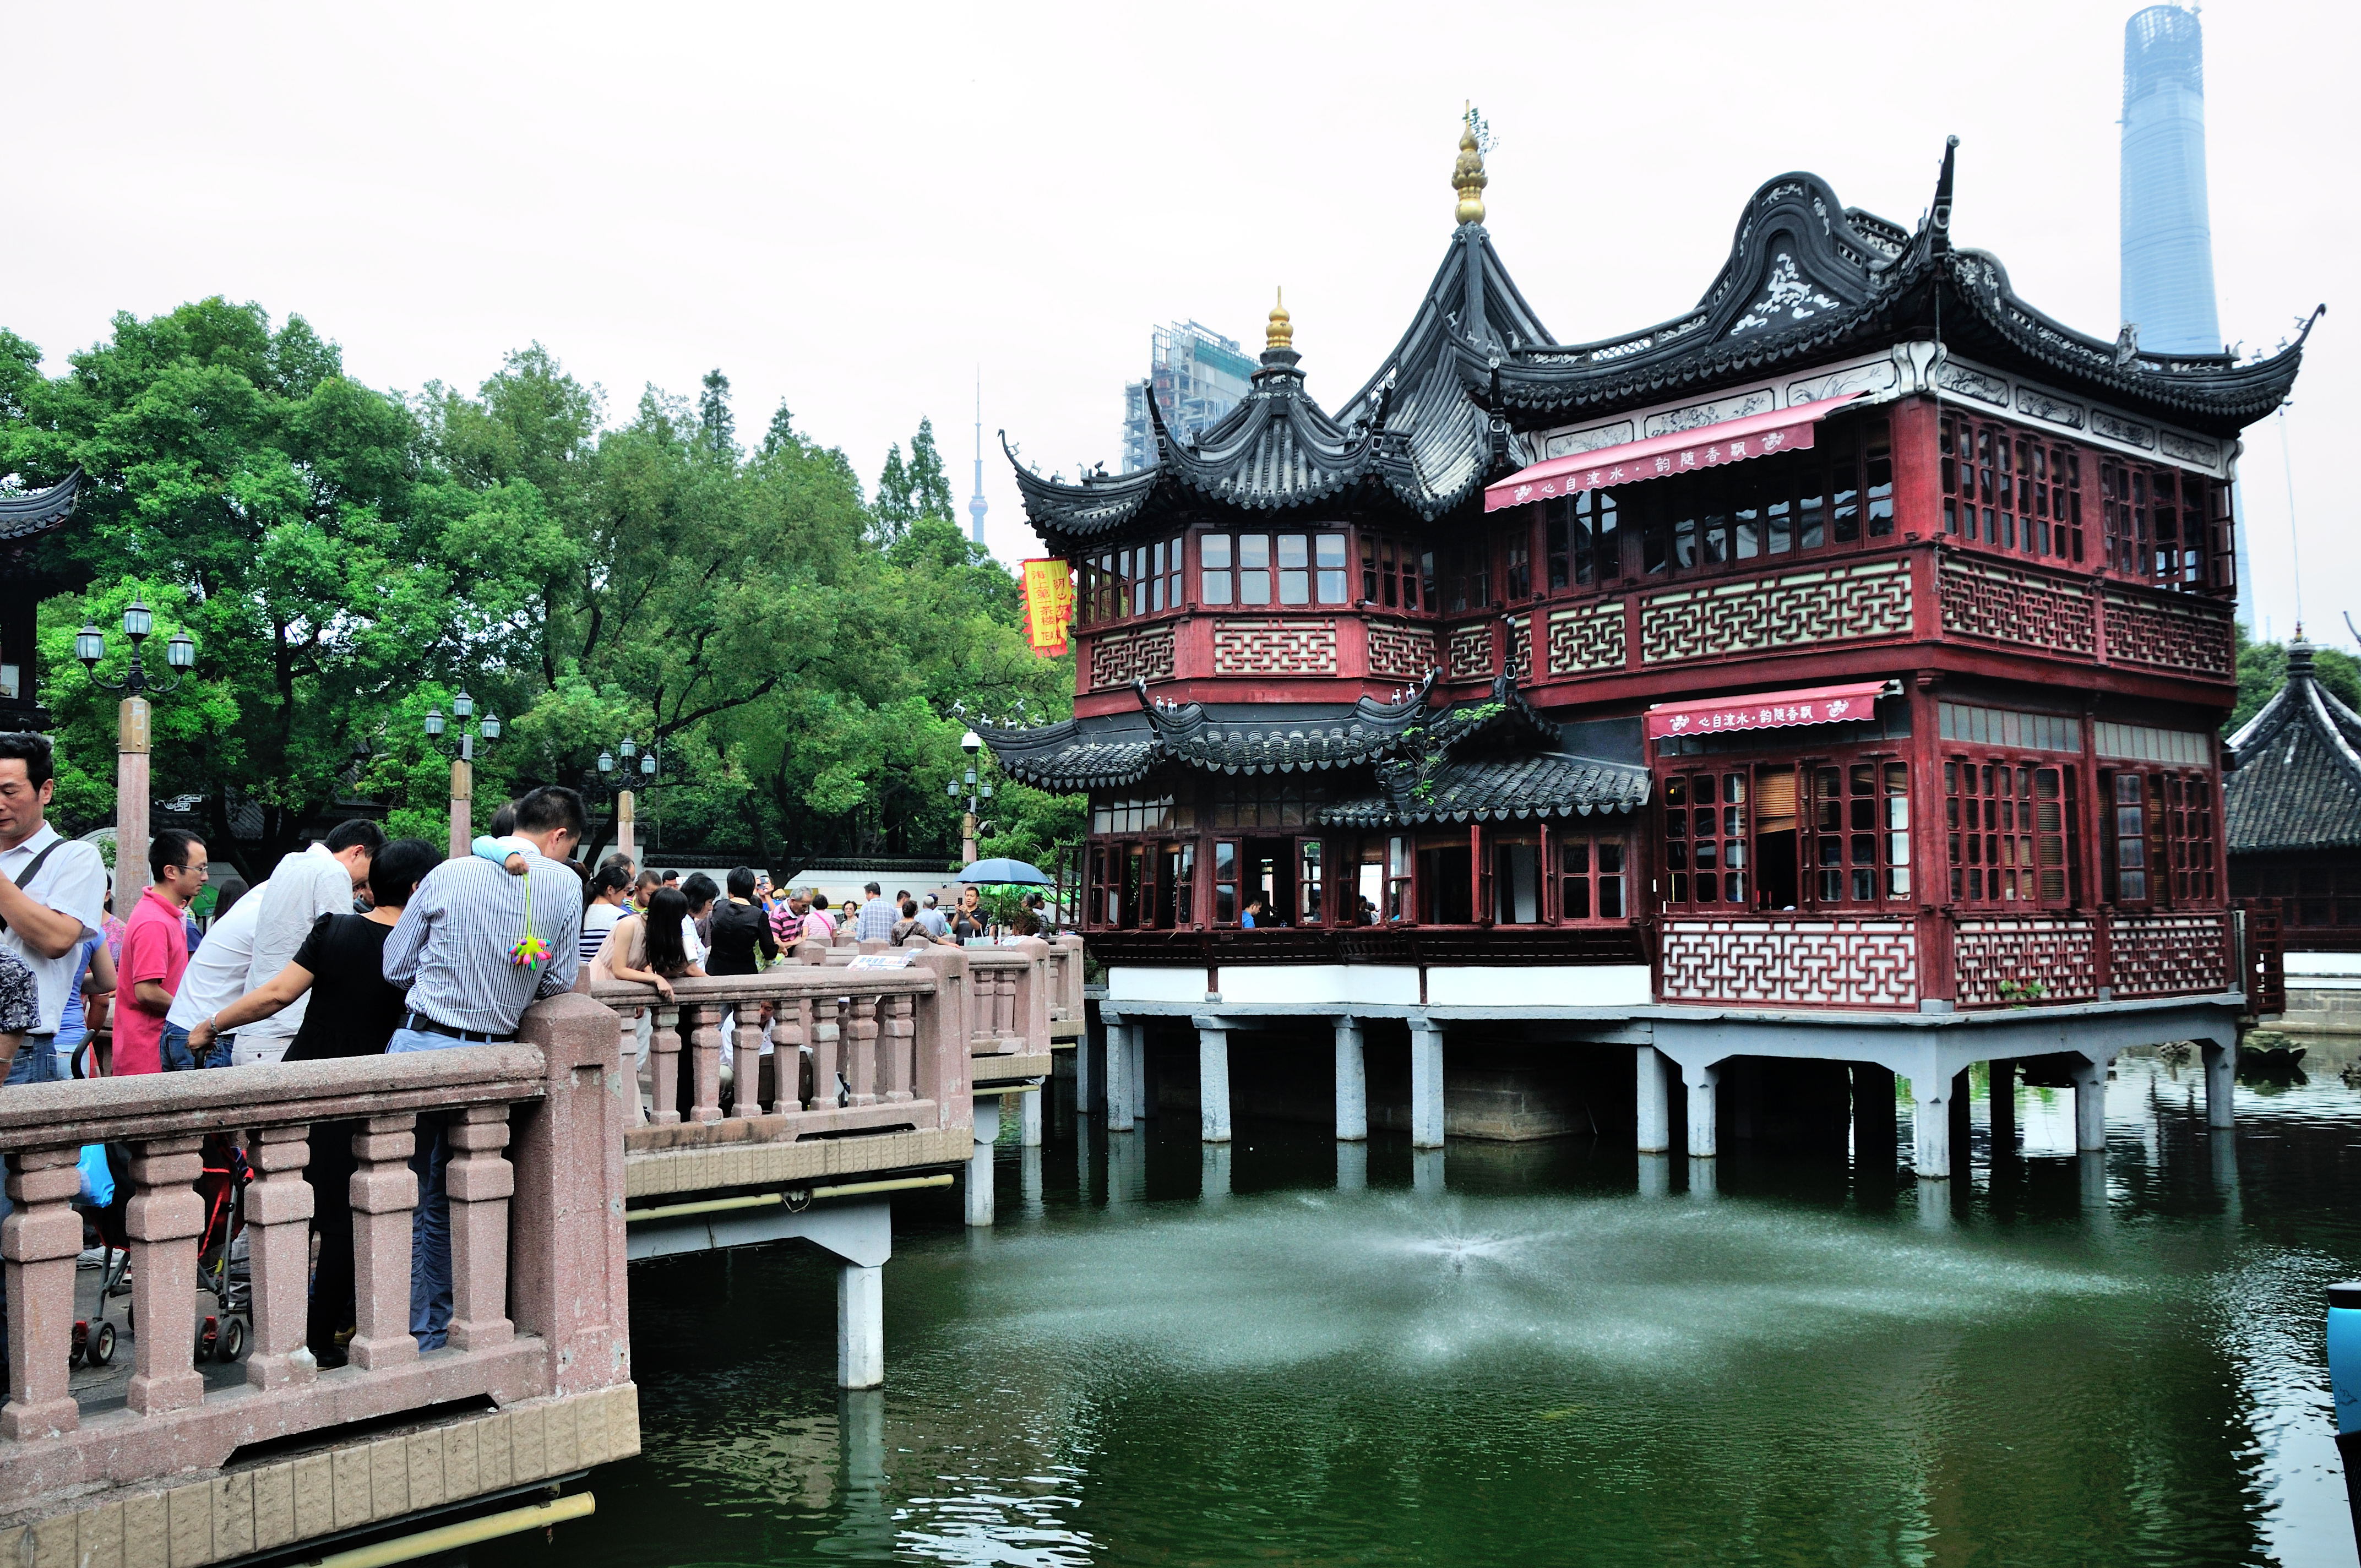 【携程攻略】上海城隍庙旅游区购物,城隍庙,也算是上海当地的一个特色